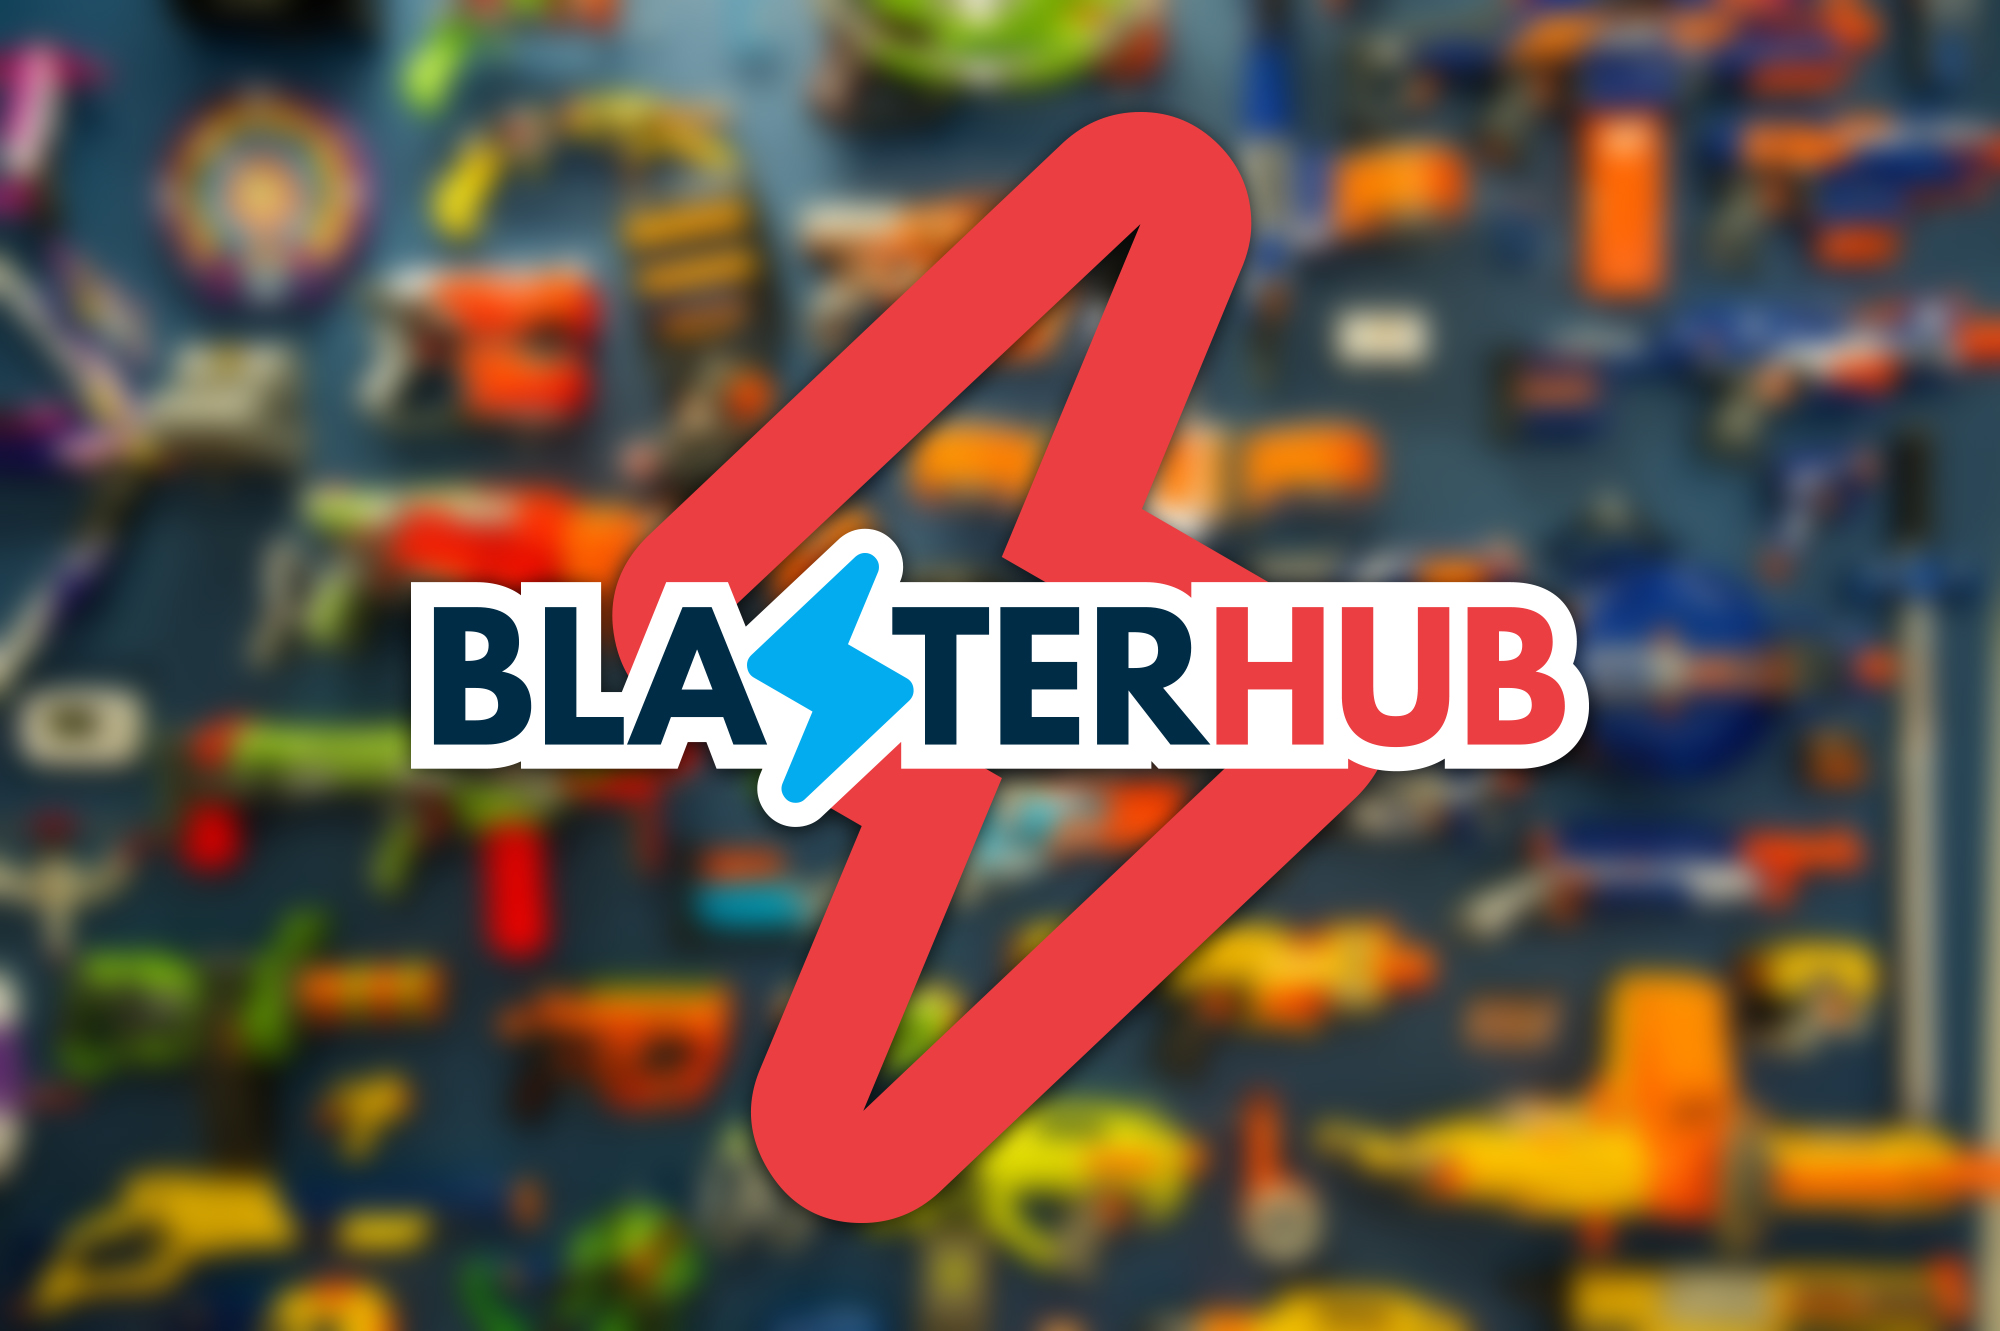 Blaster Hub Intro